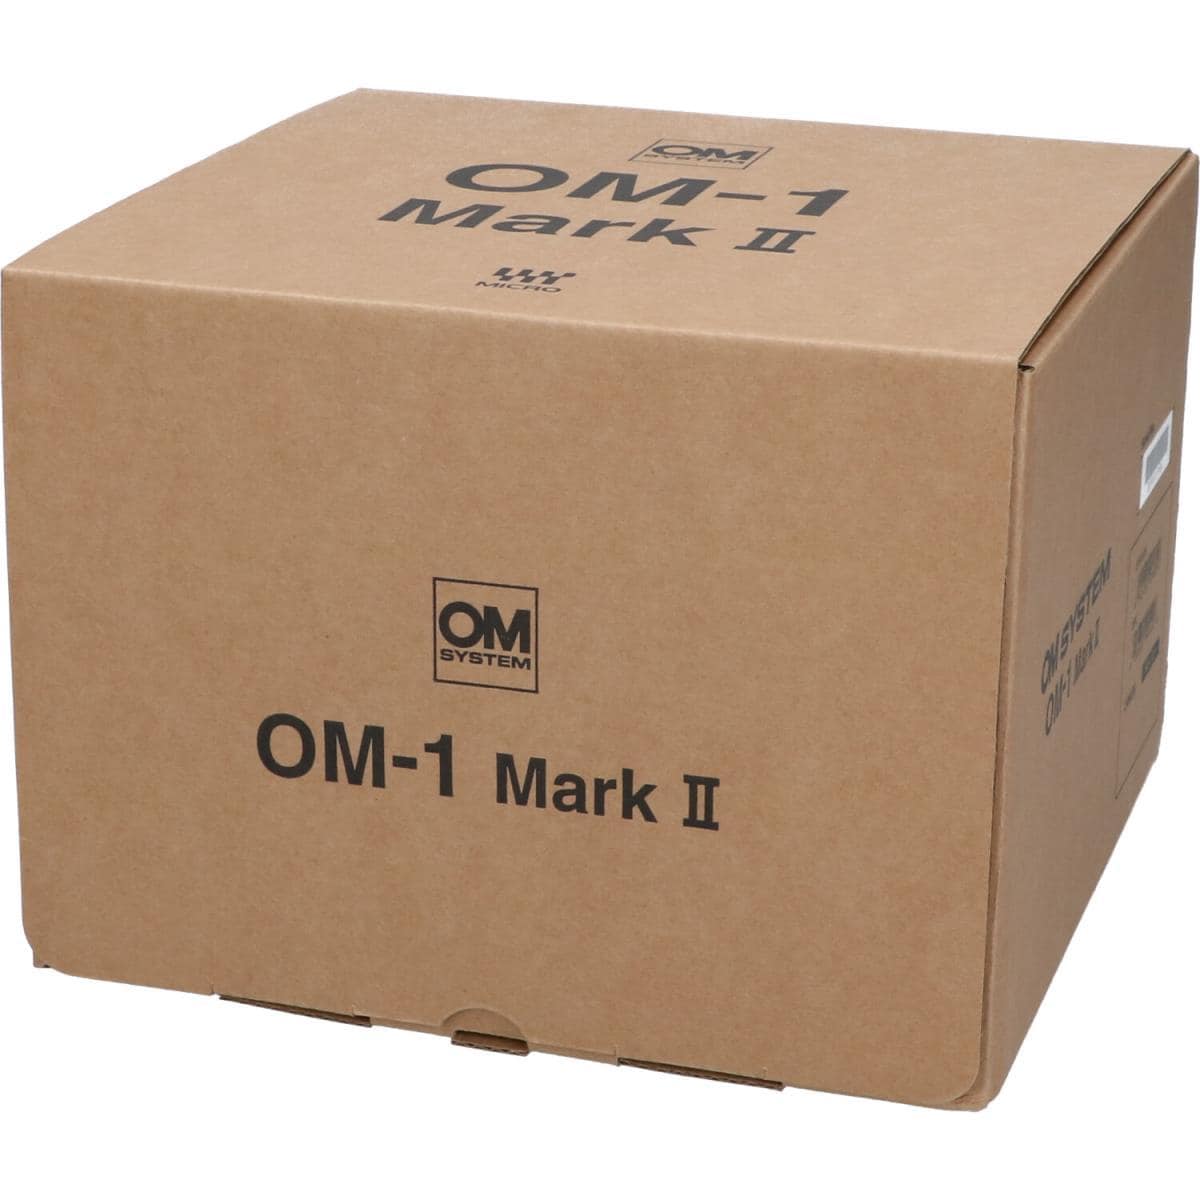 [Unused items] OM SYSTEM OM-1MARK II